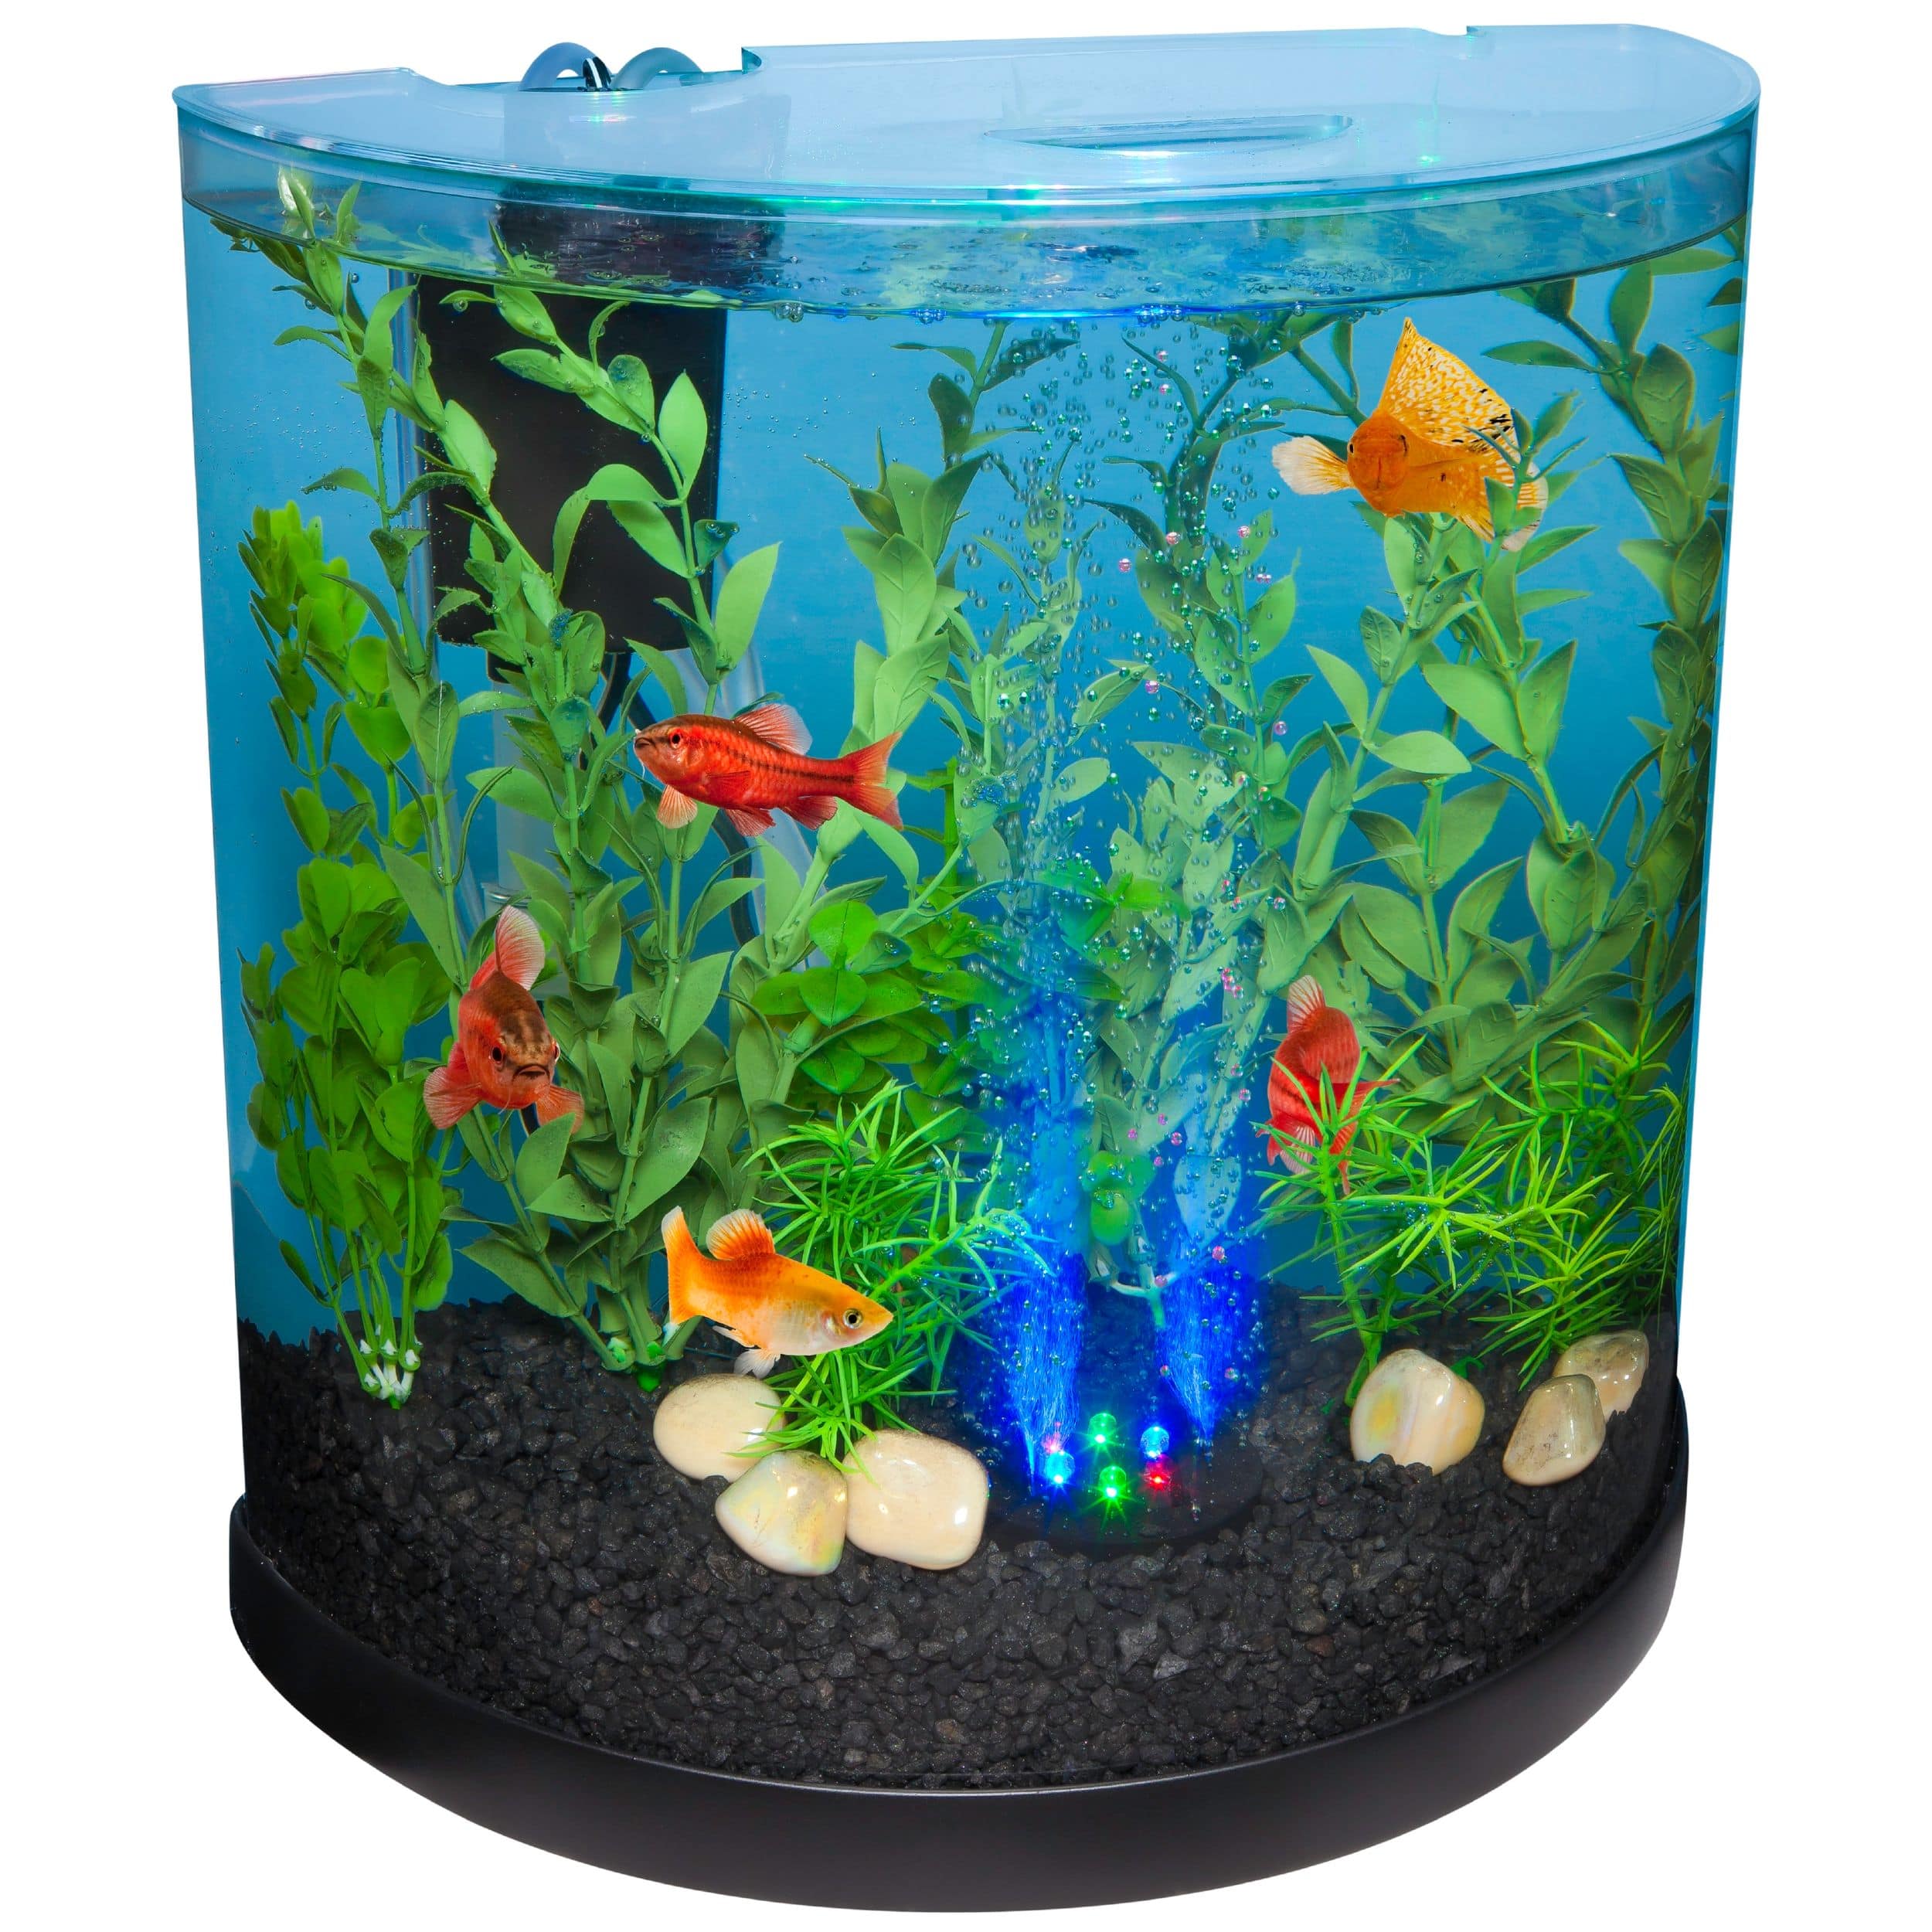 Aquarium jouet pour enfants – Aquarium électrique pour enfants